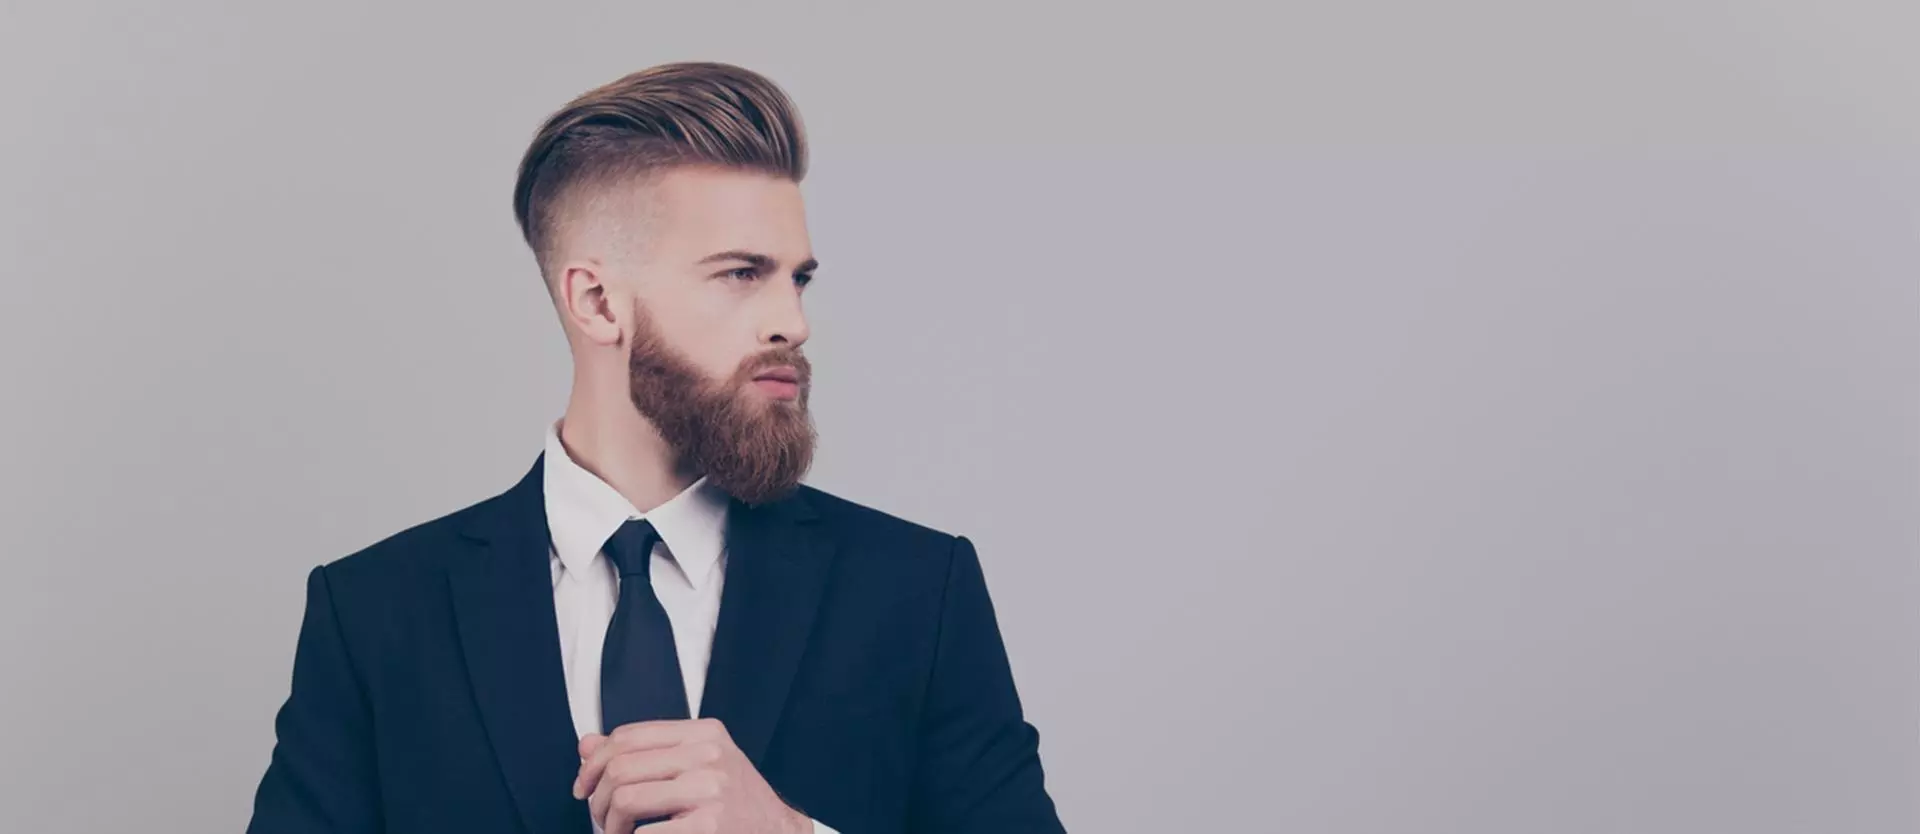 Beard Grooming Tips for Men 